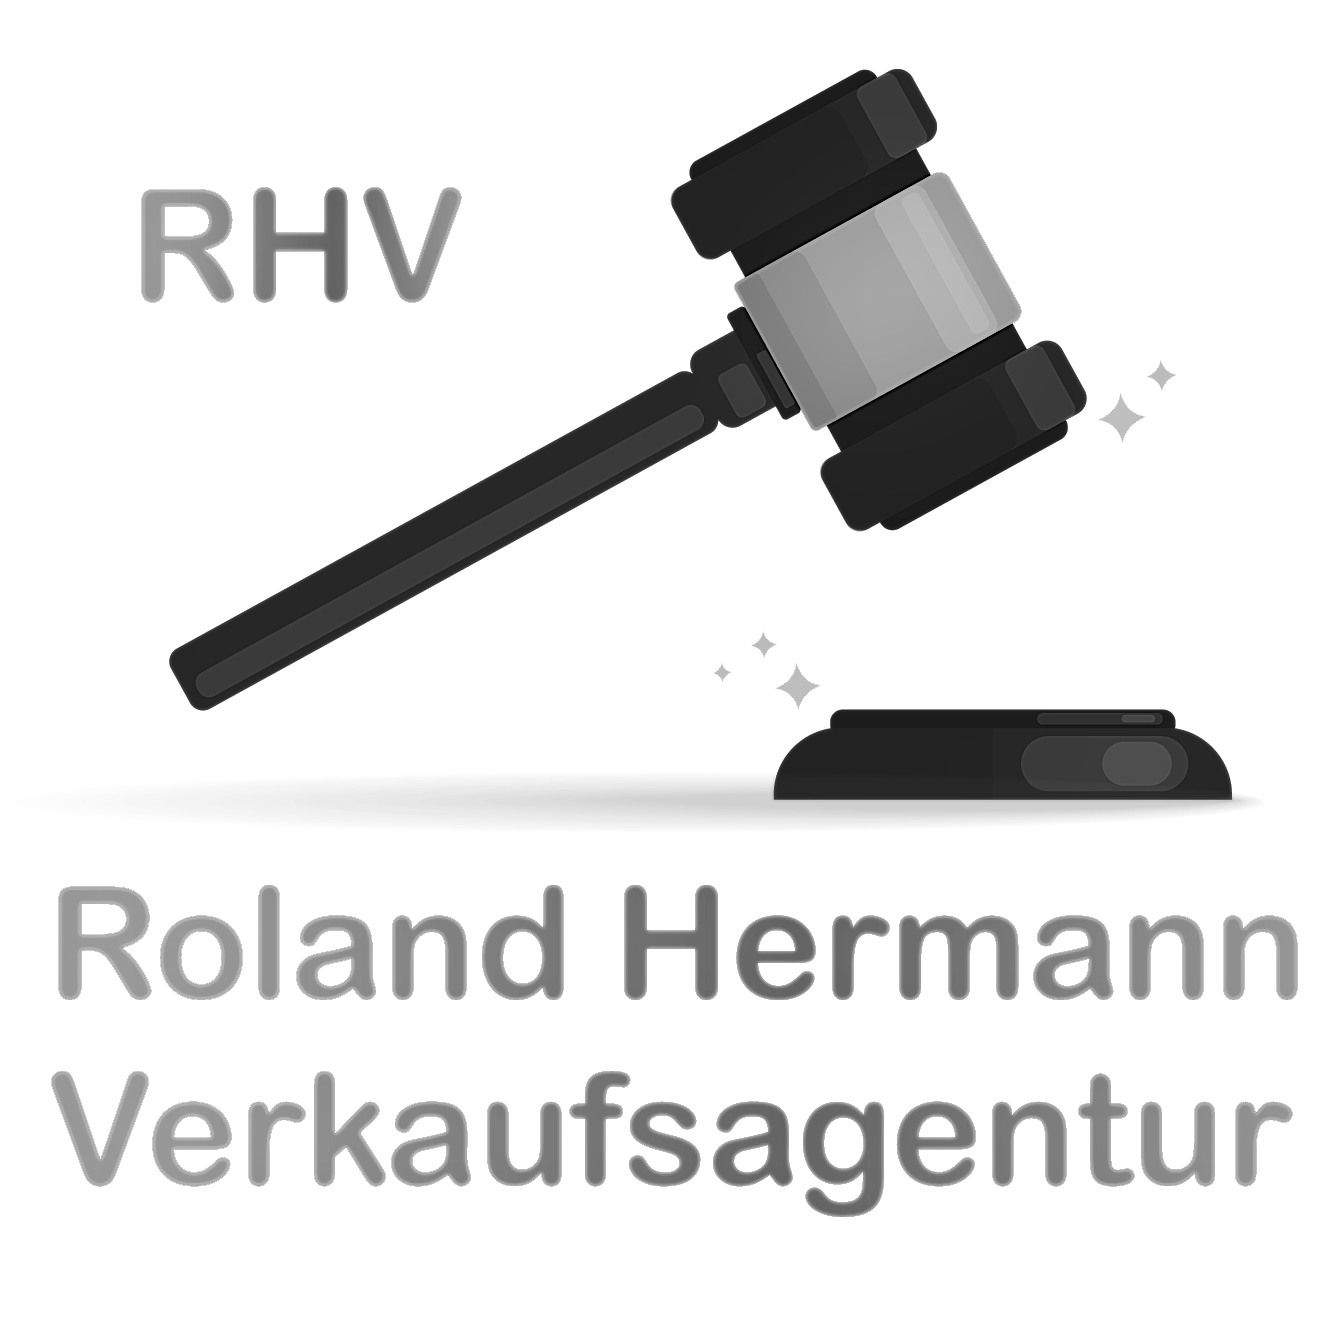 Roland Hermann Verkaufsagentur